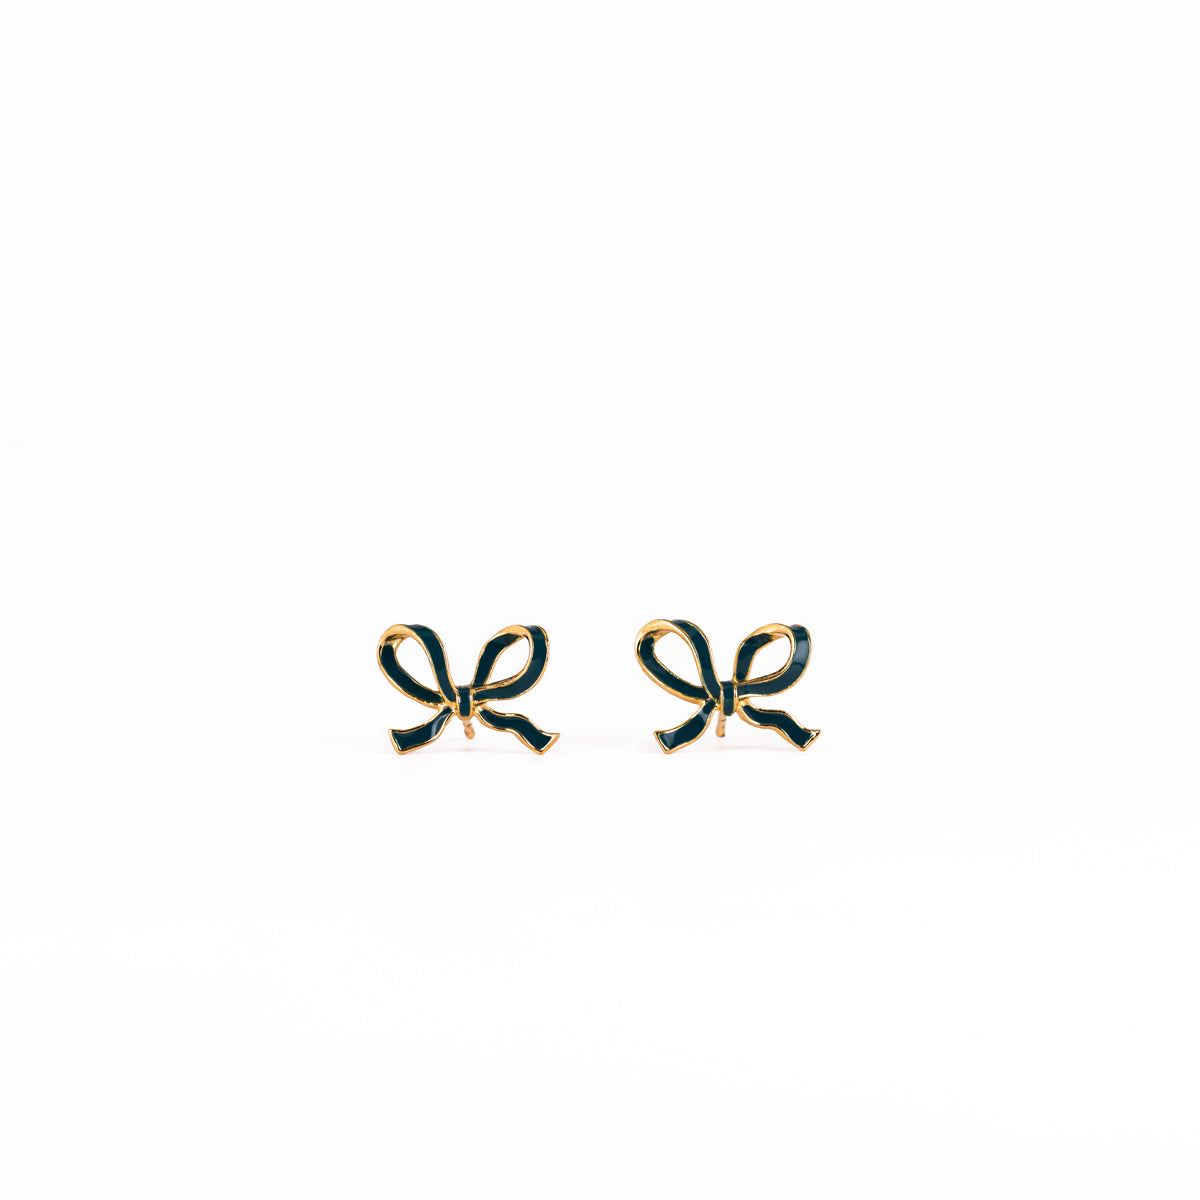 Little Bow earrings - Teal